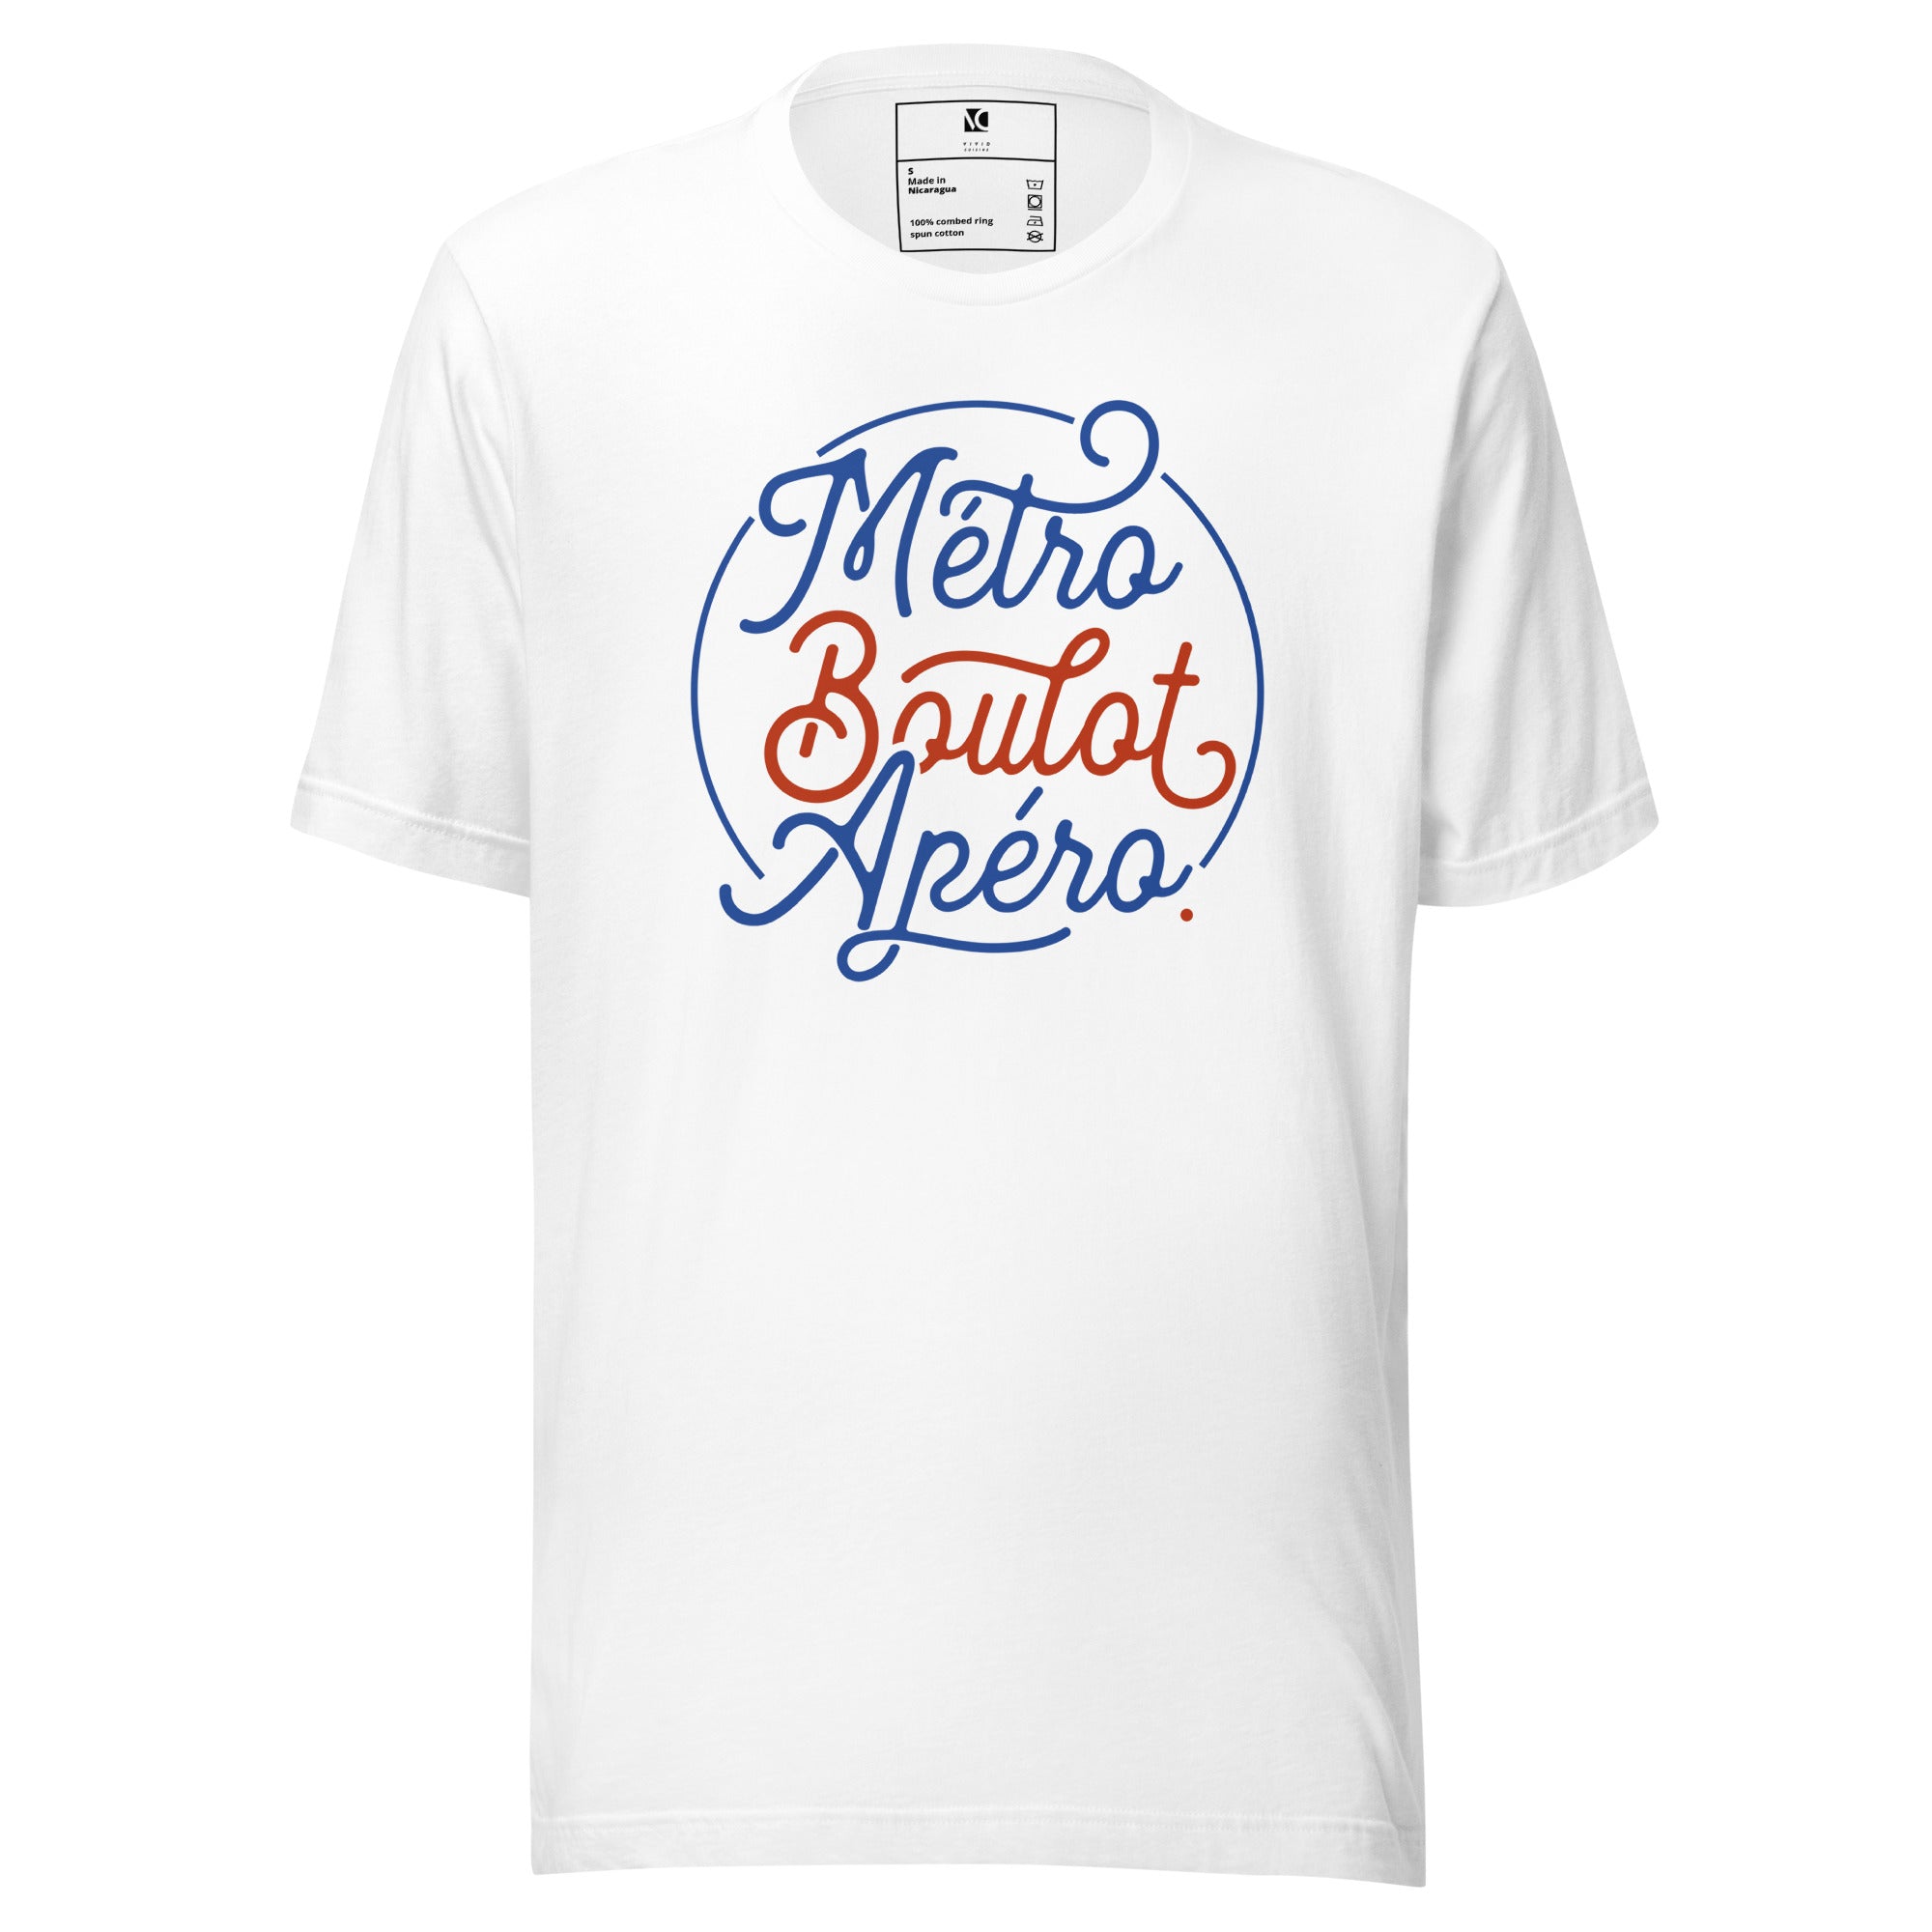 Métro, Boulot, Apéro - Unisex T-Shirt